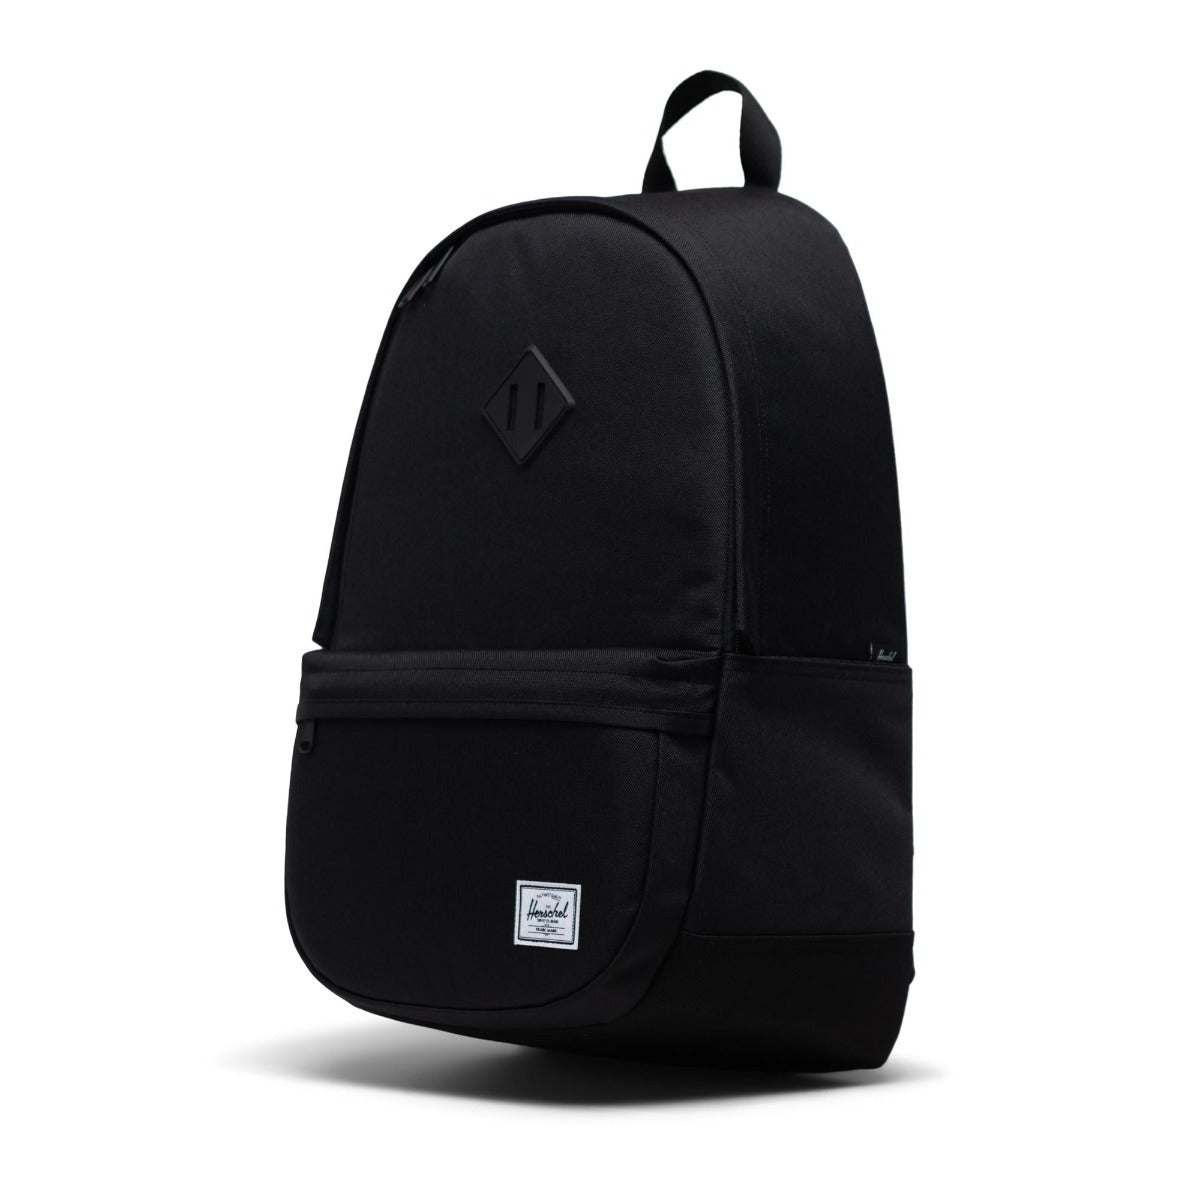 Herschel Heritage Backpack Pro